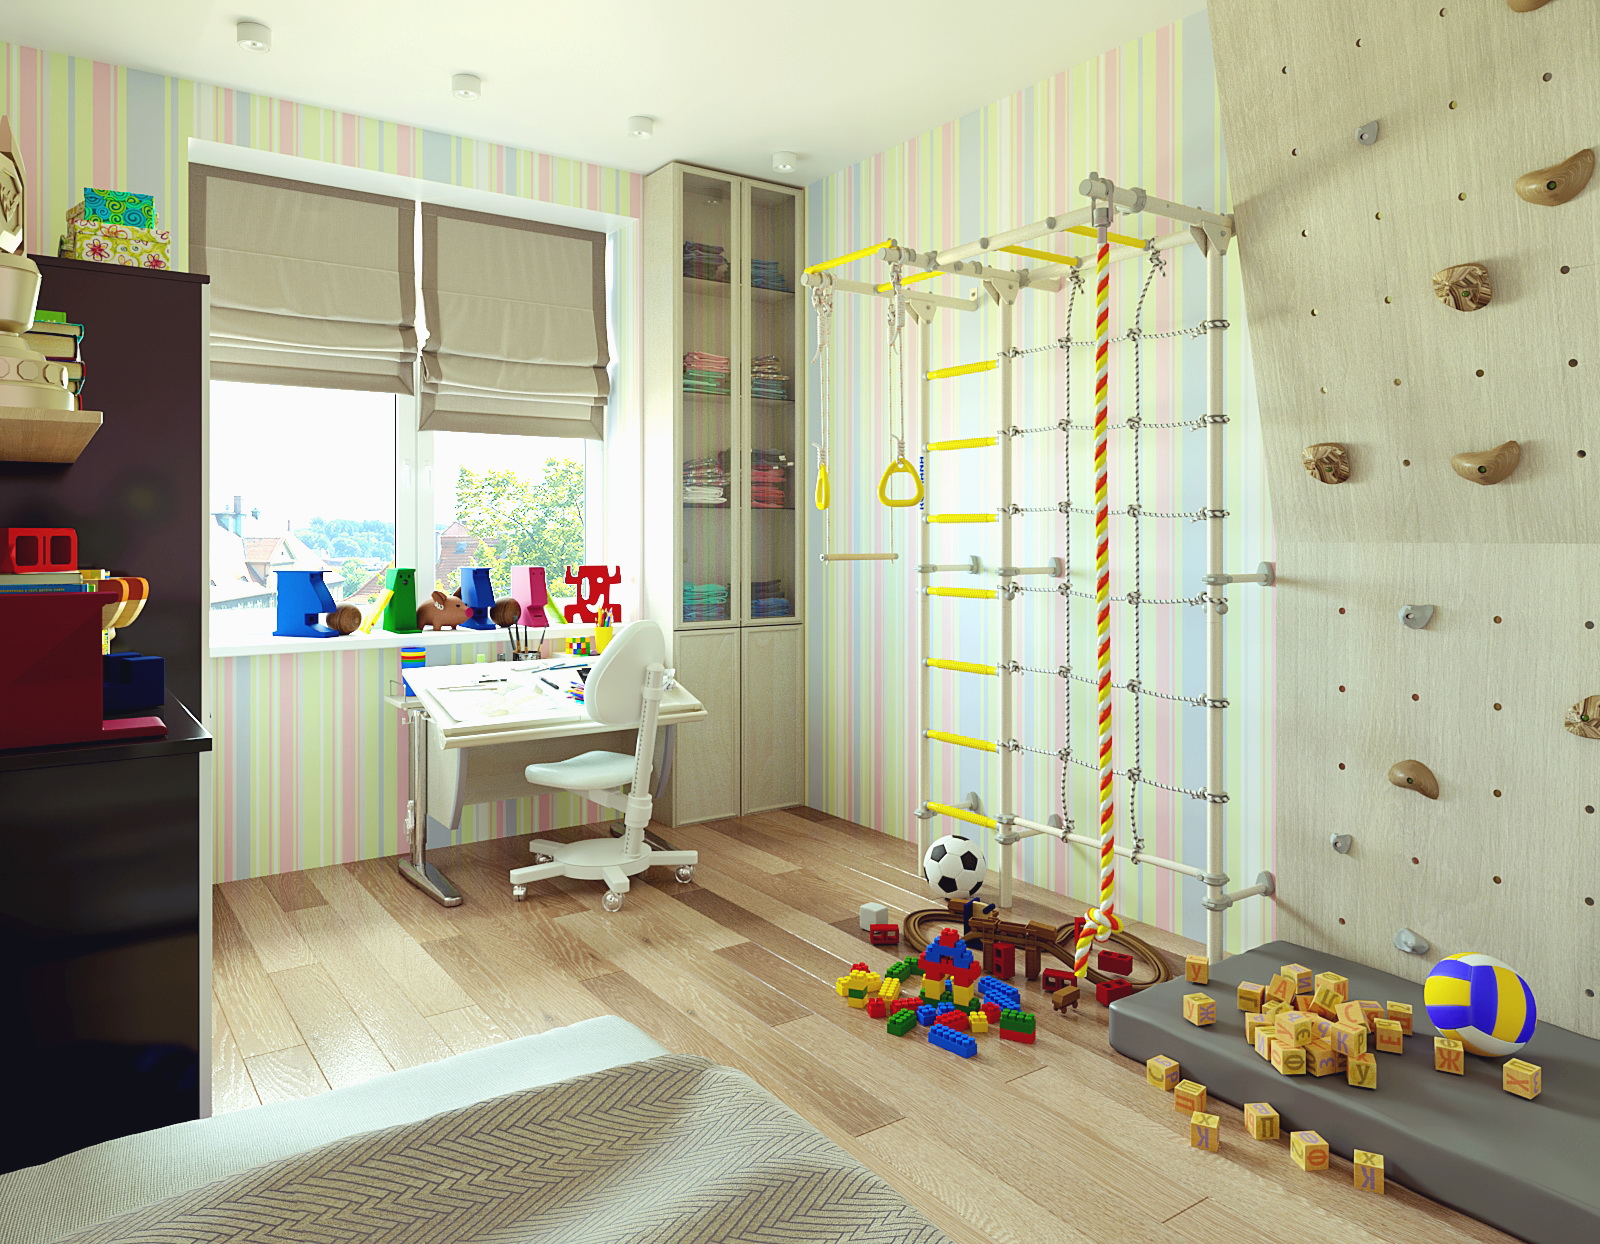 3D- Visualisation de la chambre des enfants dans 3d max corona render image